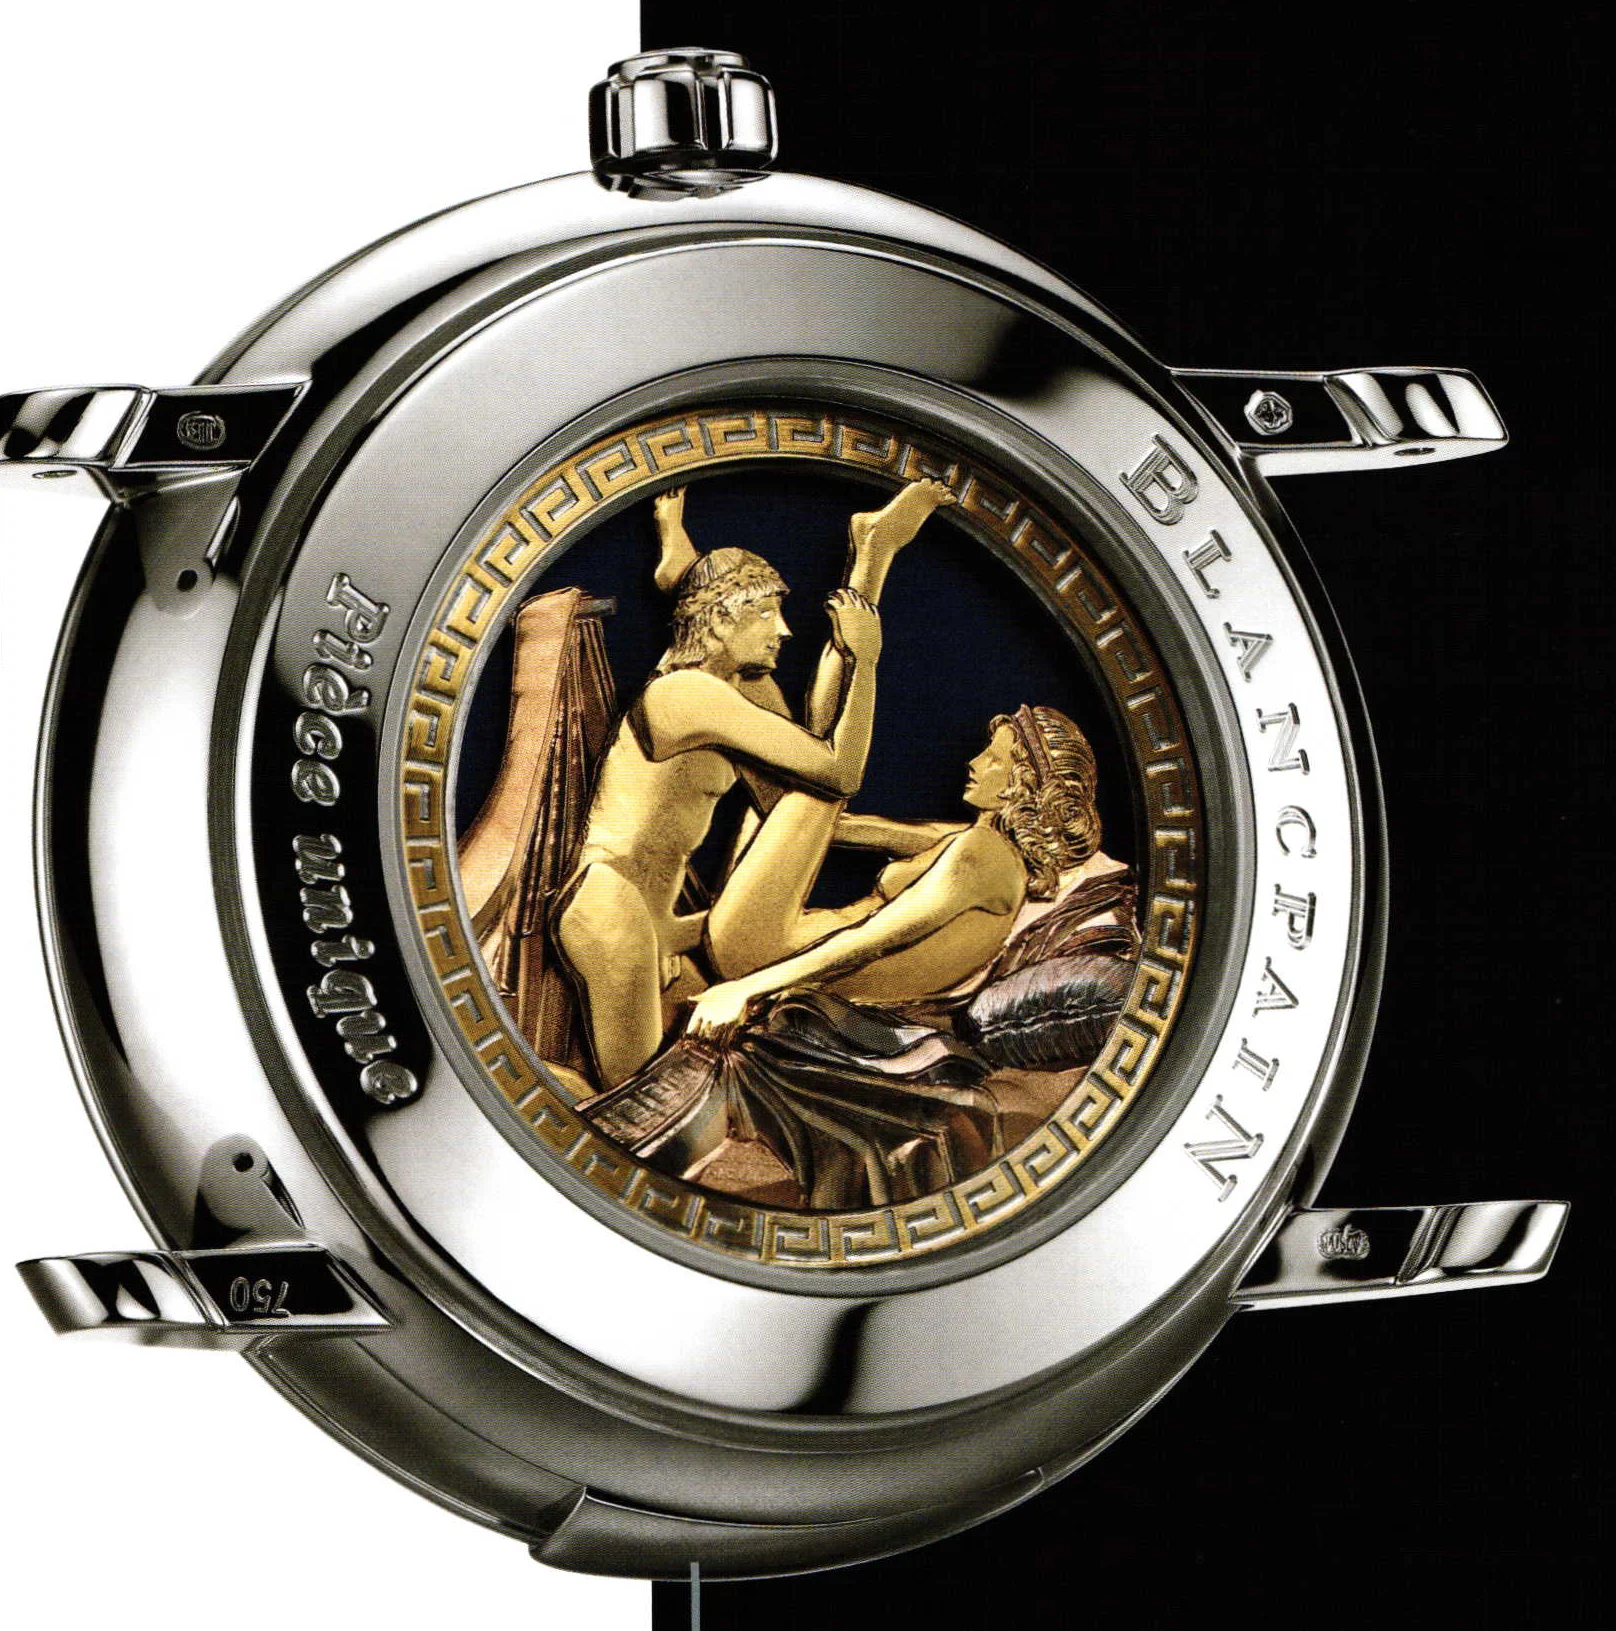 Erotic luxury watches